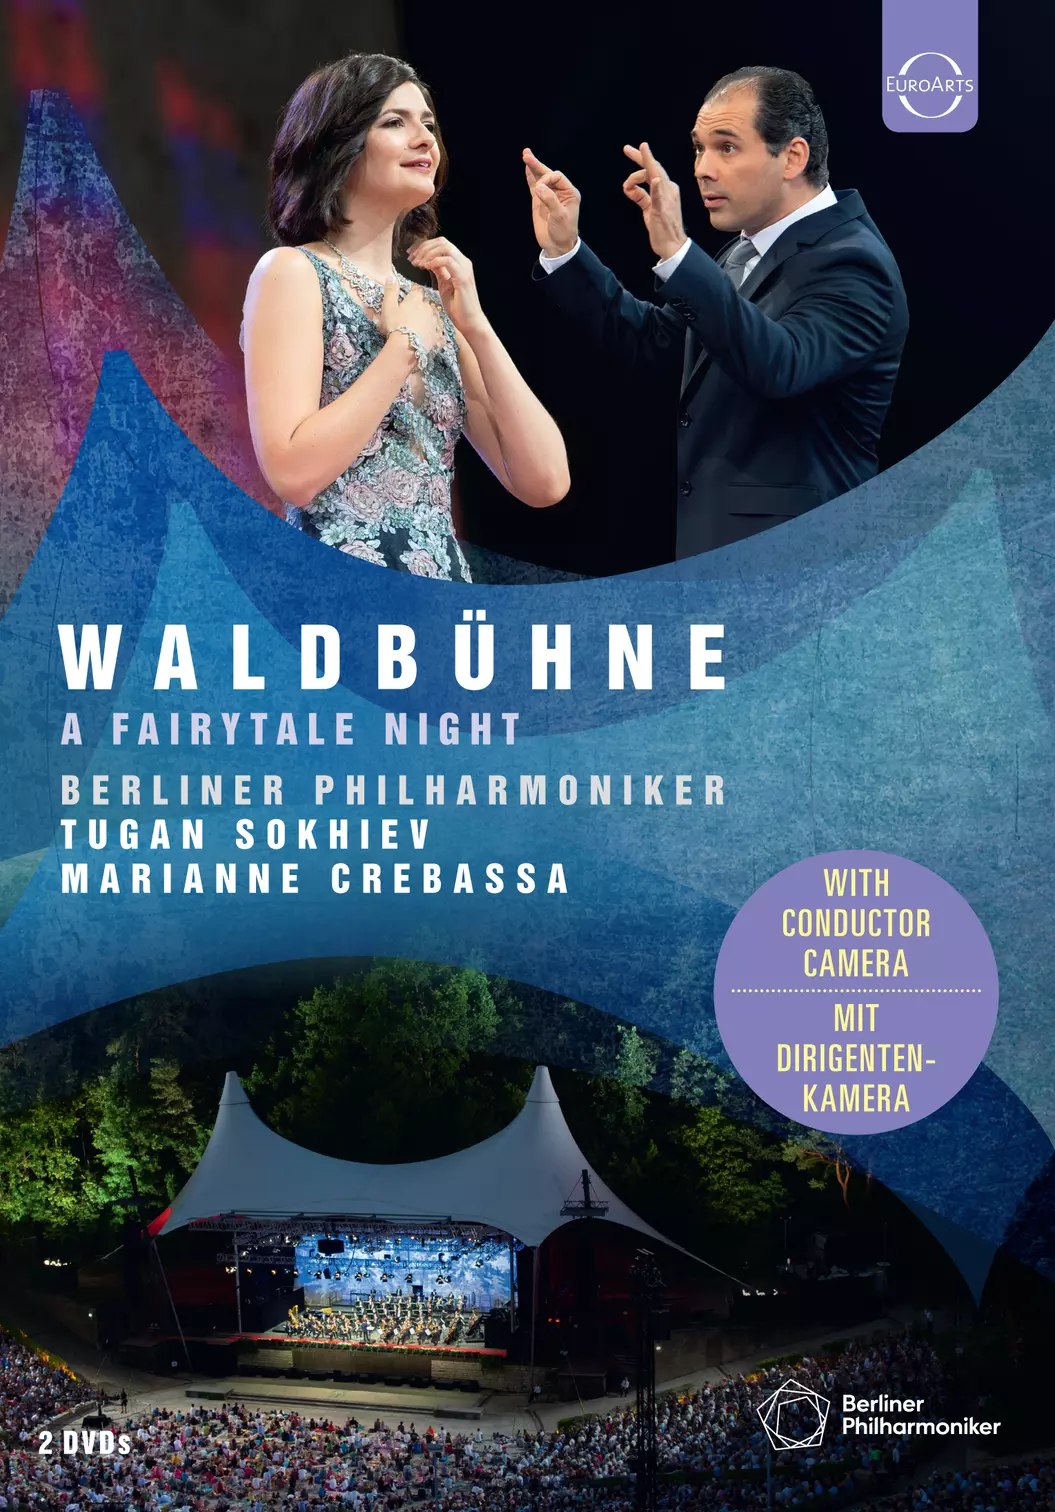 Waldbühne 2019 - A Fairytale Night